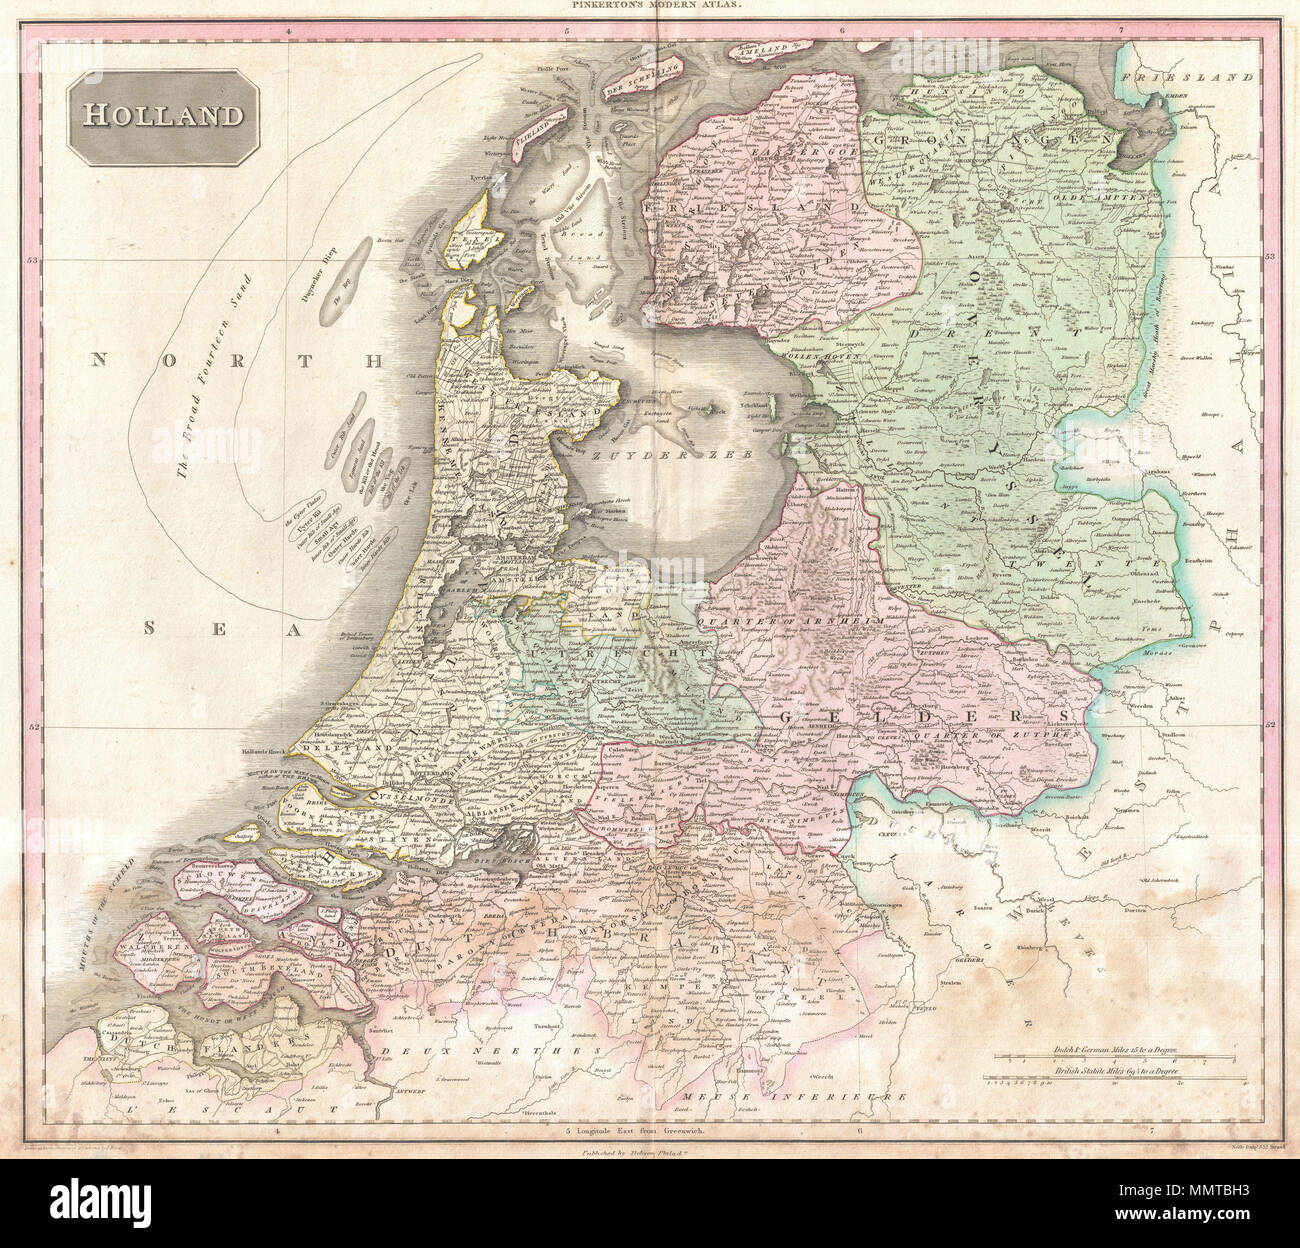 Anglais : Pinkerton 1818 extraordinaire plan de Hollande. Couvre ce qui est  aujourd'hui essentiellement entre les Pays-Bas, la Belgique et l'Allemagne.  Sous-marine offre une excellente précision sur divers hauts-fonds et autres